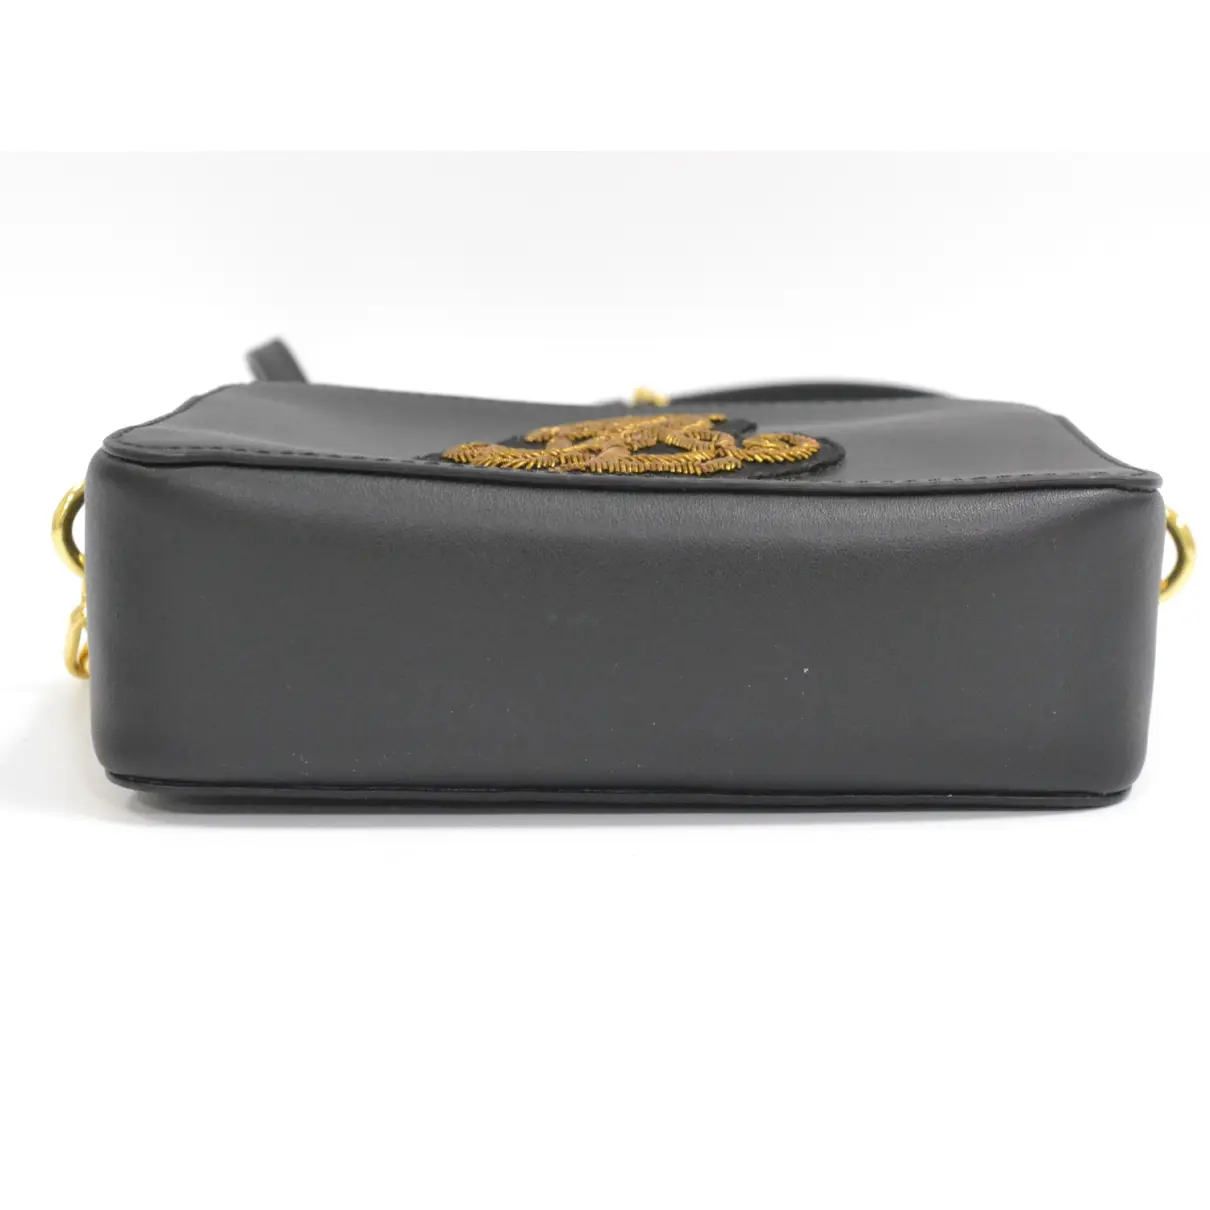 Leather handbag Lauren Ralph Lauren